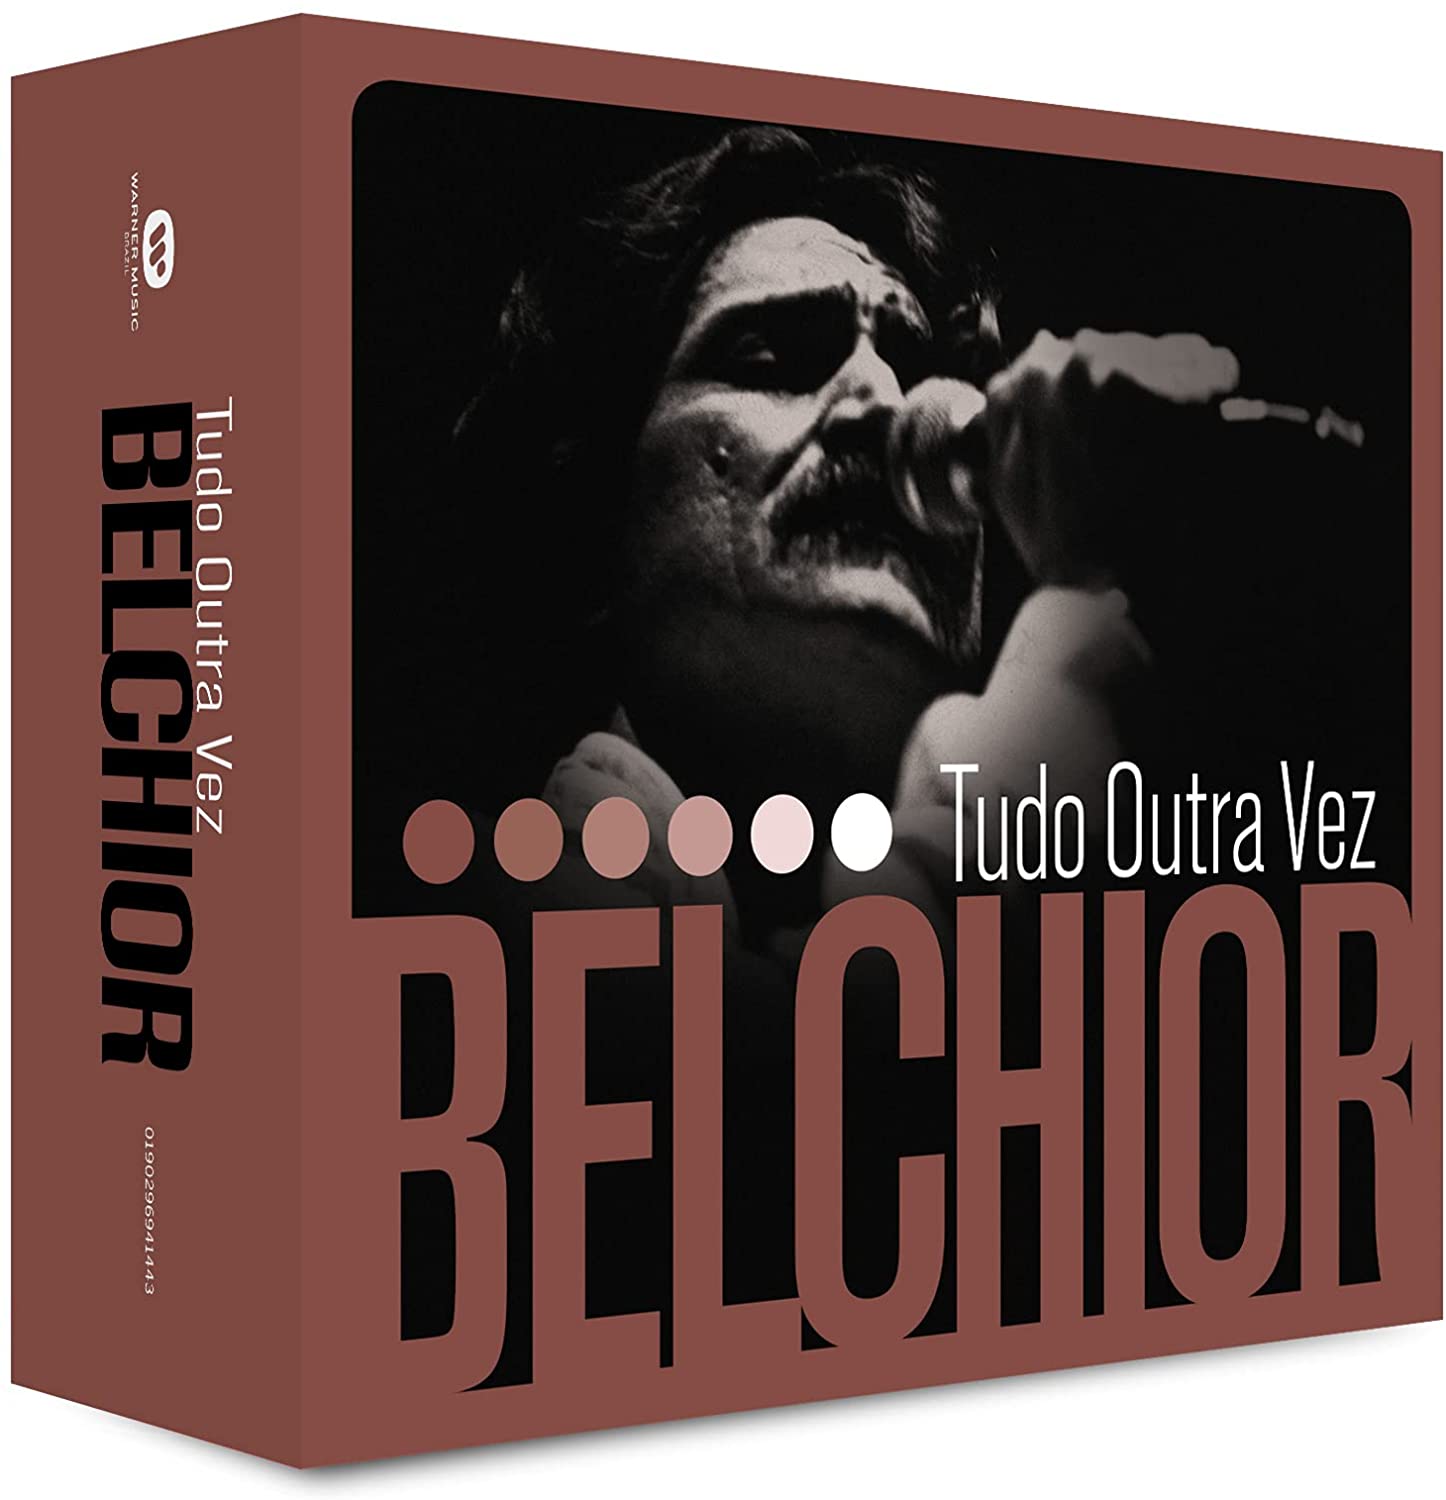 Belchior – Box 6 CDs – Tudo Outra Vez